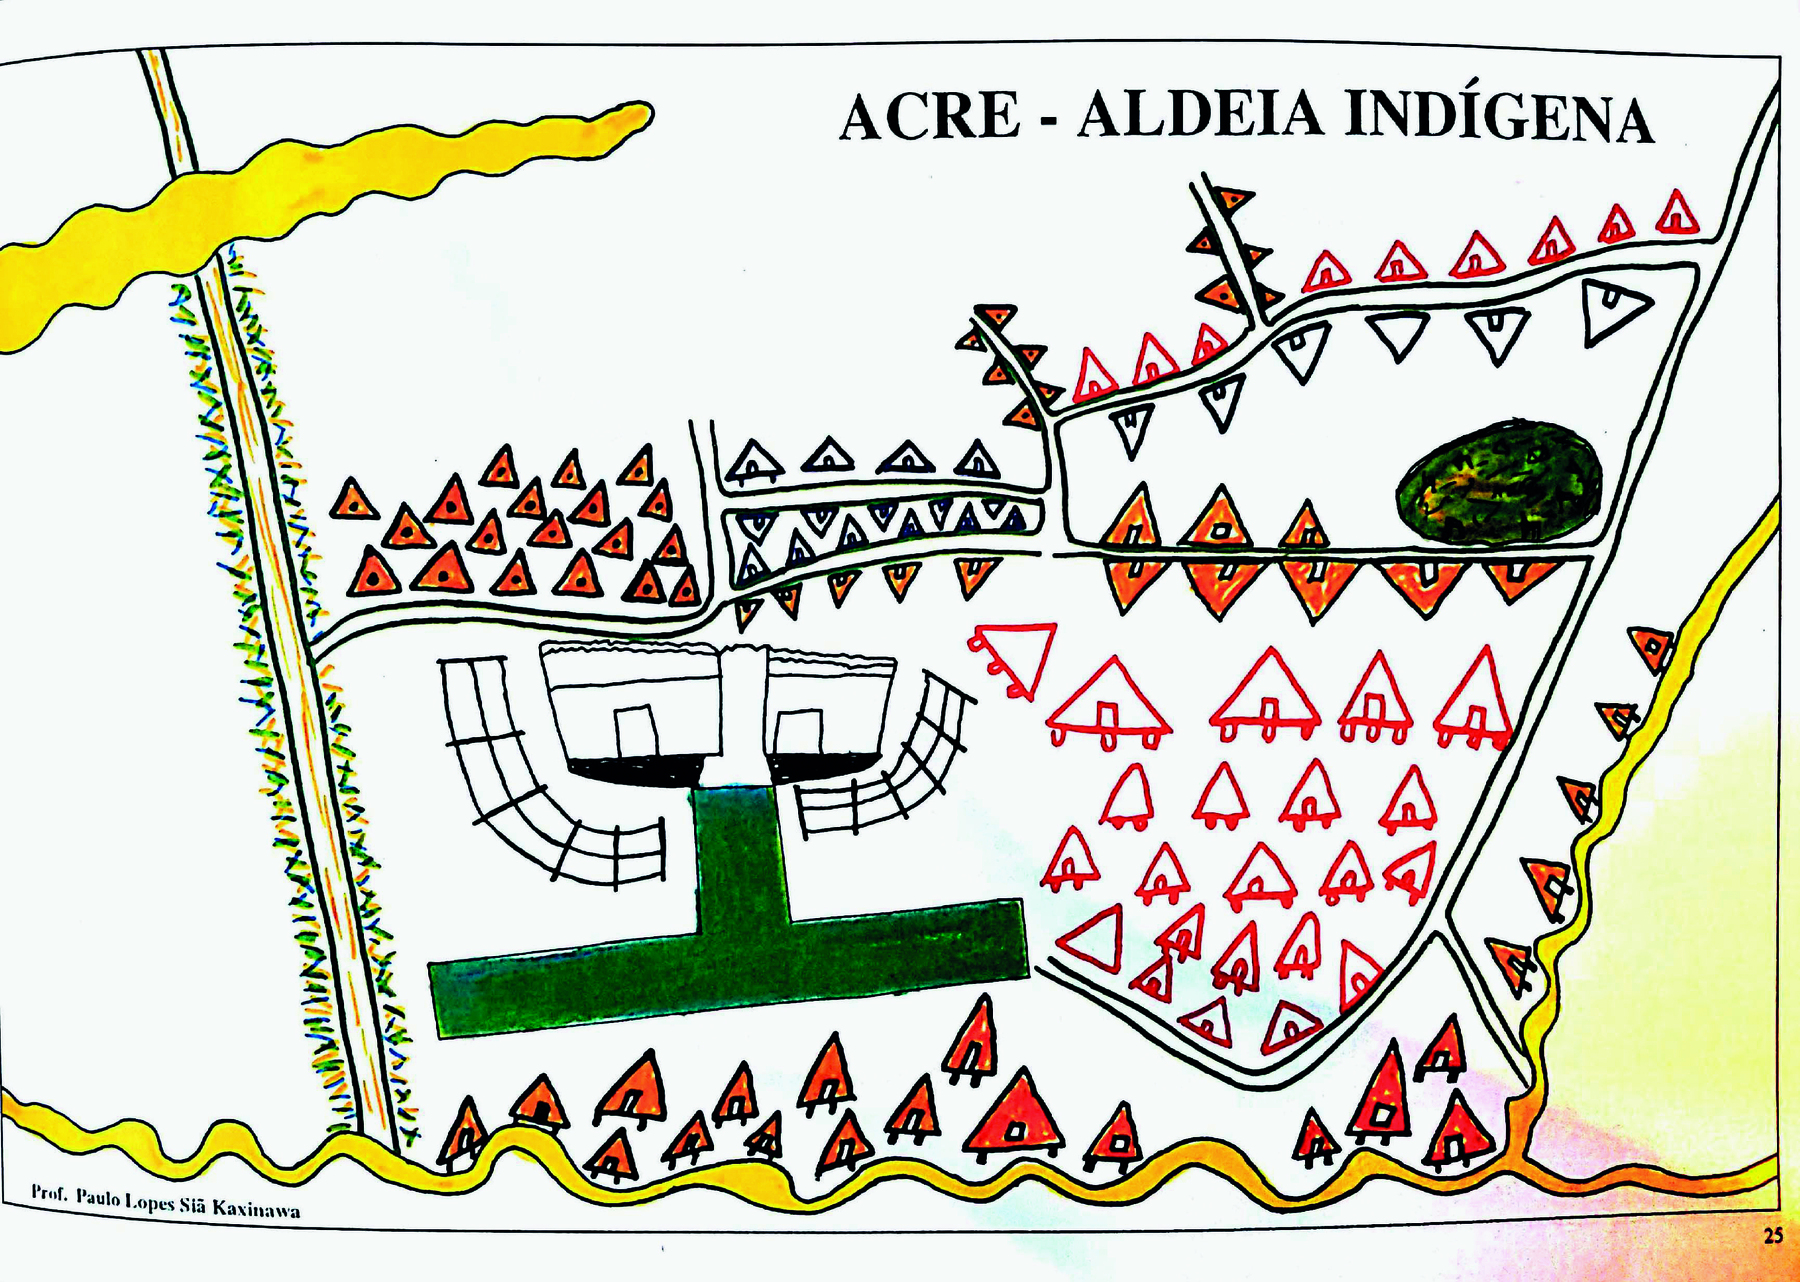 Ilustração. Na parte superior, o título: Acre, aldeia indígena. Ao centro, duas grandes construções retangulares com cercas em forma de arco. Ao redor, diversas habitações triangulares, conectadas por caminhos representados nas cores branca e amarela.